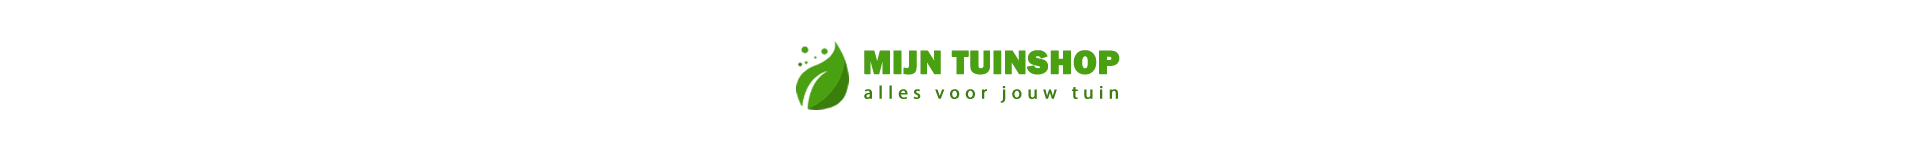 Mijn Tuinshop (NL) heldenafbeelding